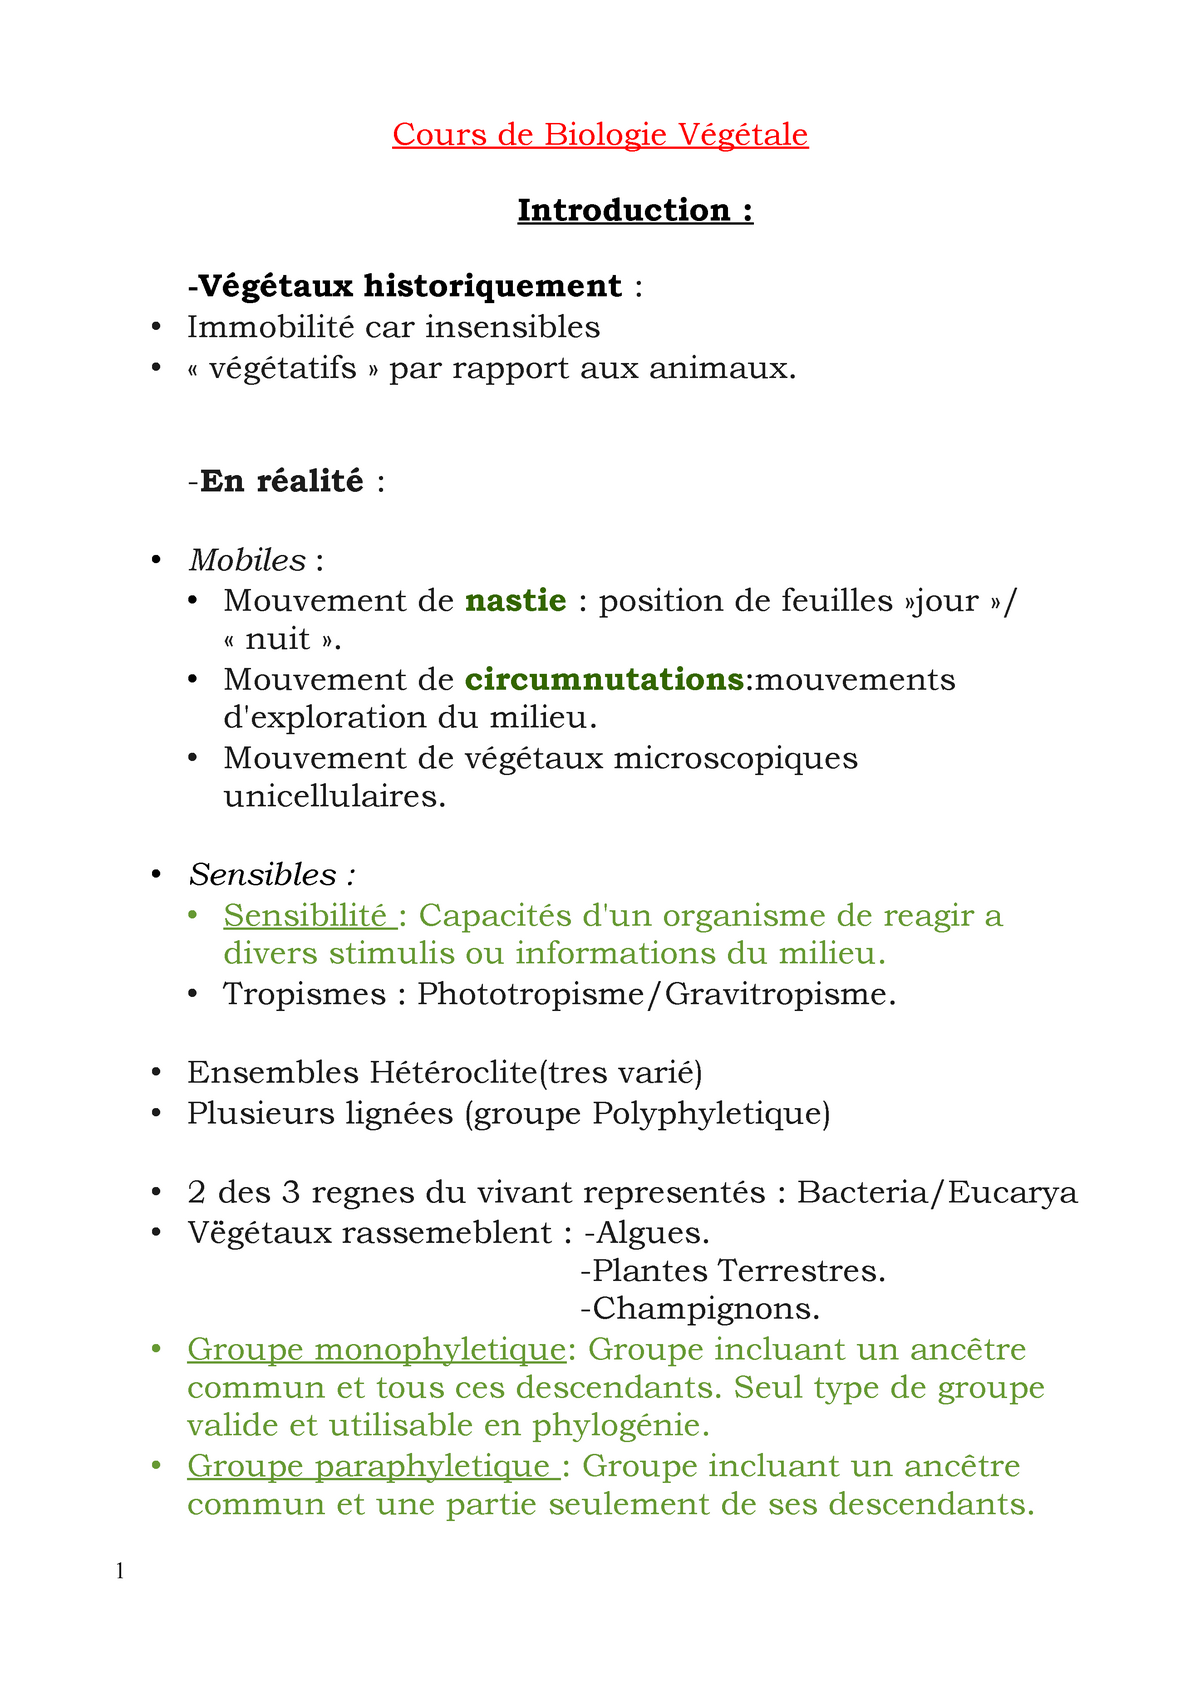 Cours De Biodiversite Vegetale 2 L1 Sn Ups Studocu